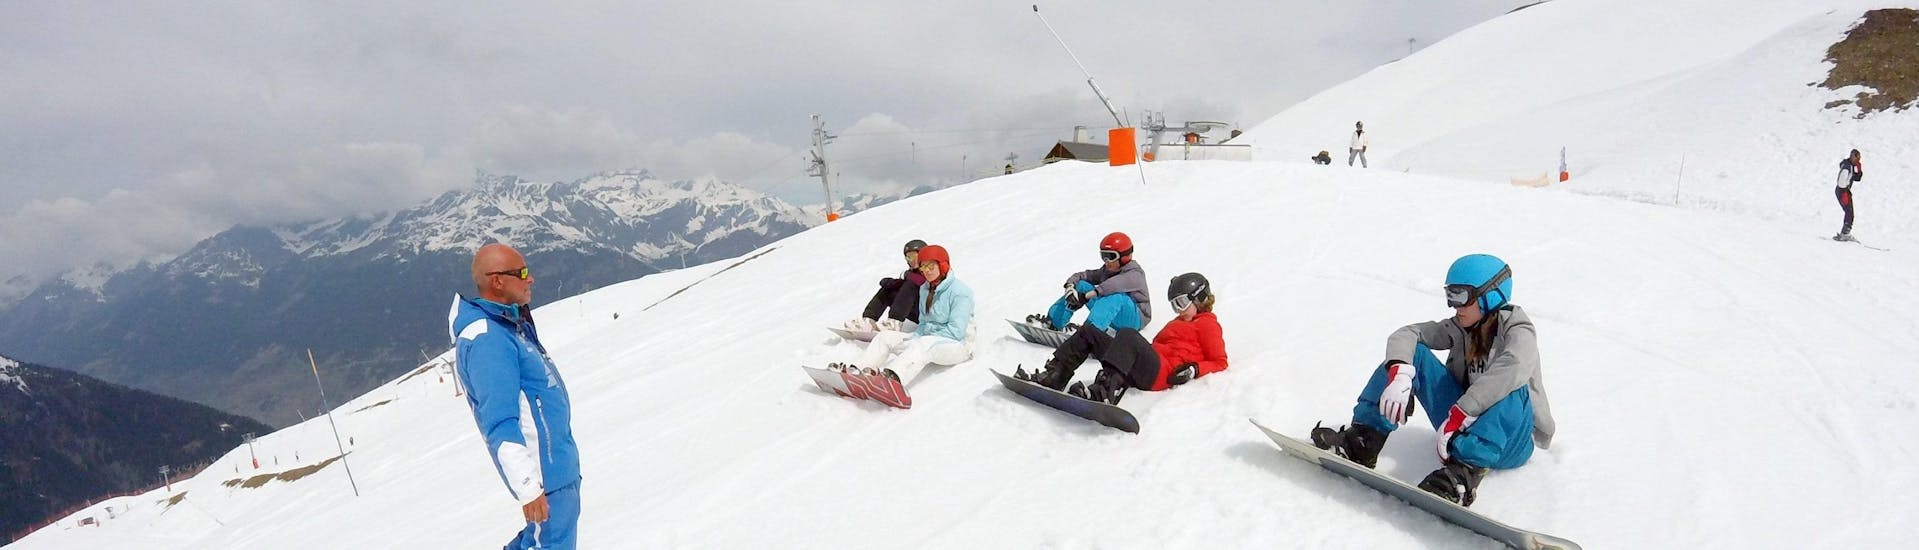 Clases de esquí para niños a partir de 13 años para avanzados.